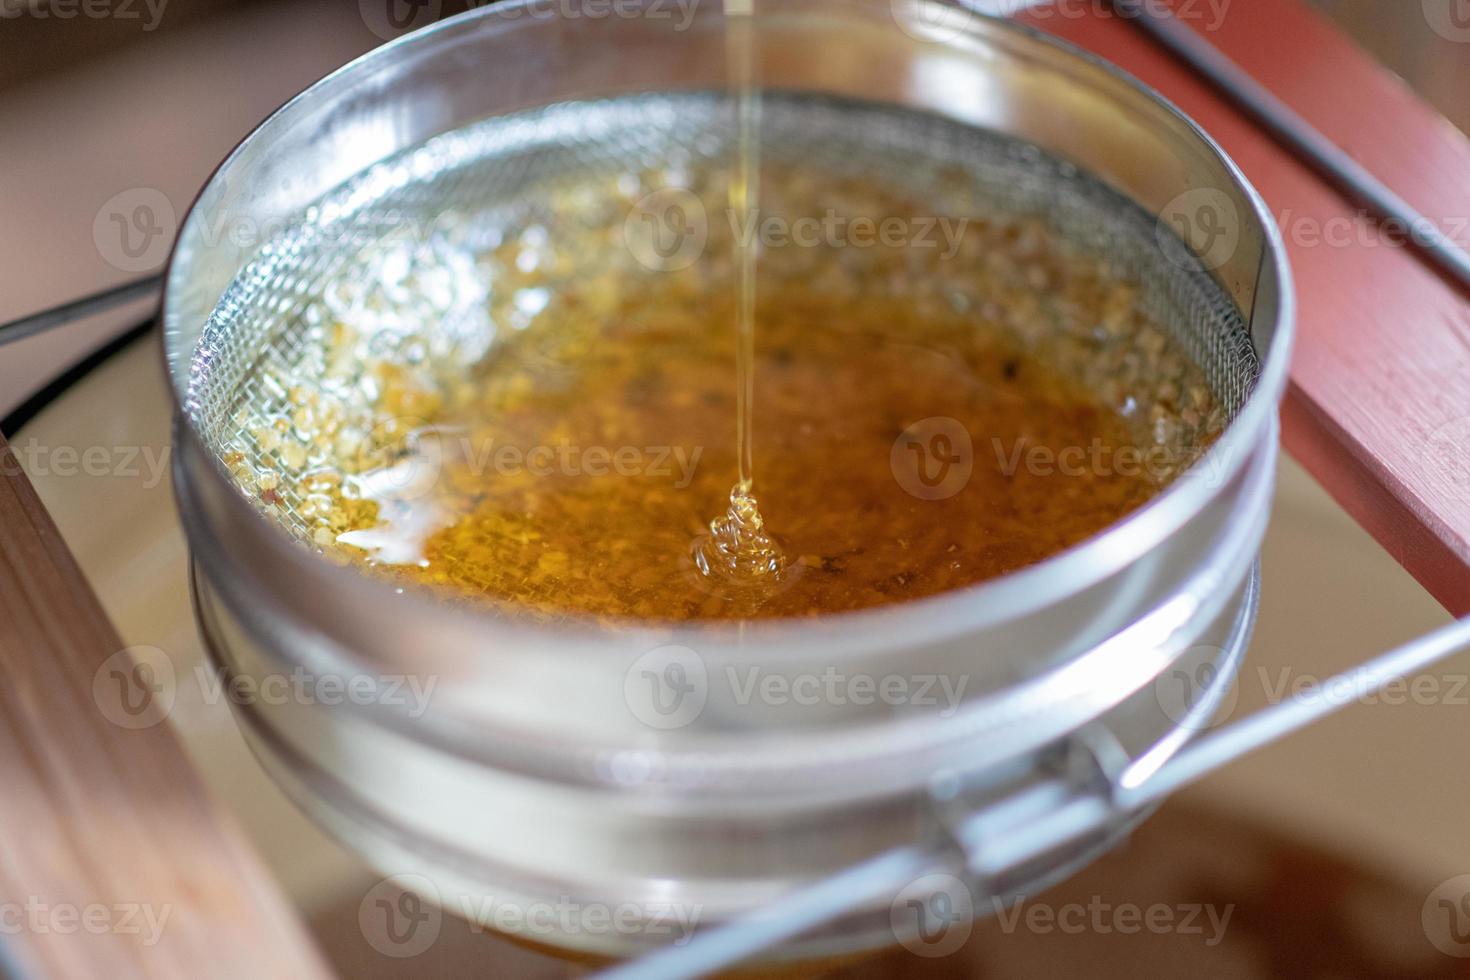 gota de mel de abelha pingando de favos hexagonais foto